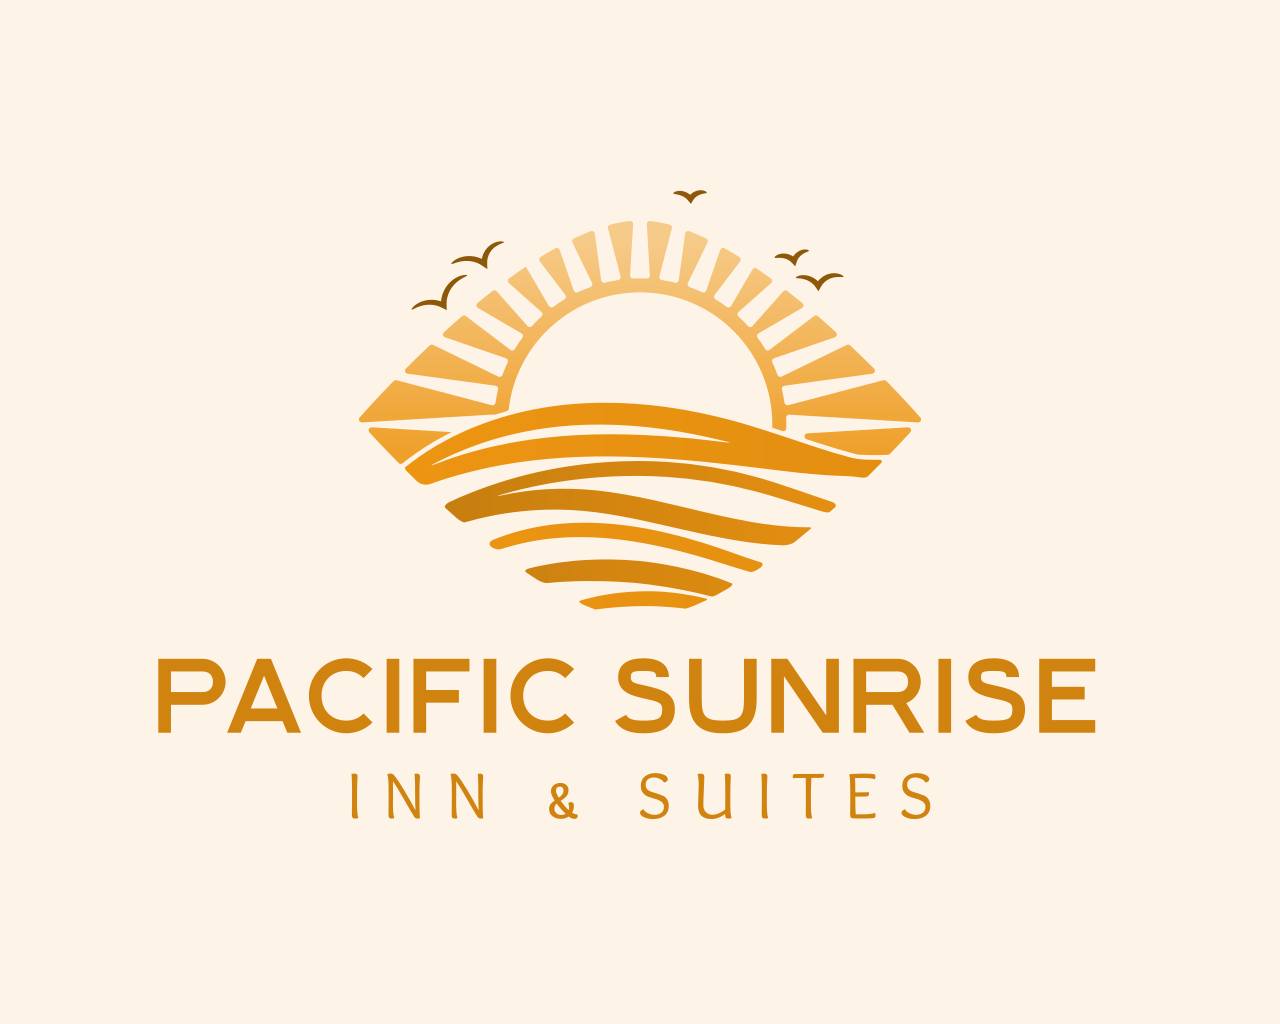 Pacific Sunrise Inn